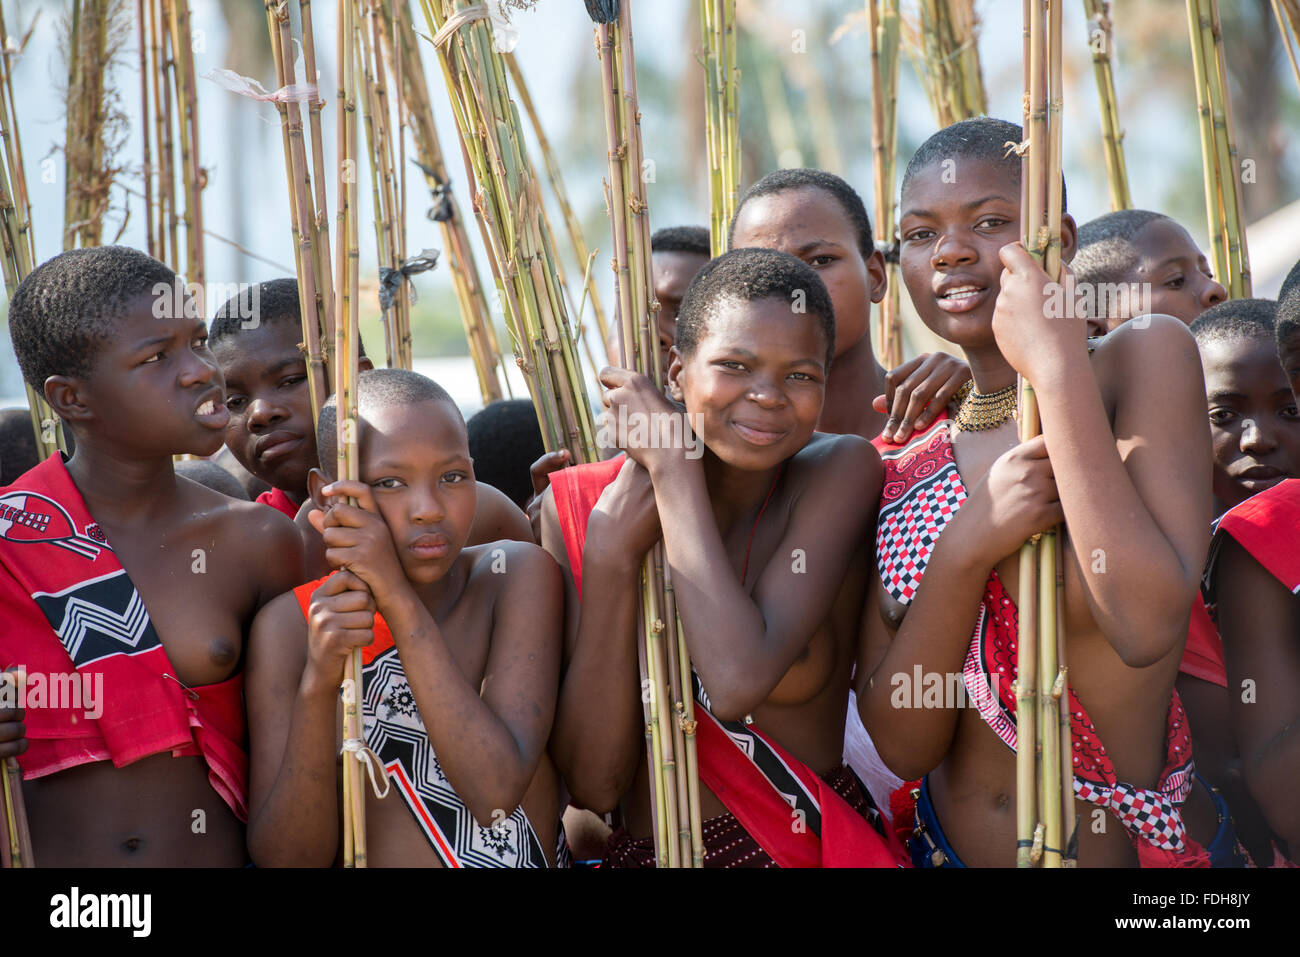 Porträts der jungen Damen am Reed Dance-Ludzidzini, Swasiland, Afrika - die Swazi Umhlanga oder Reed dance Zeremonie, 100.000 u Stockfoto